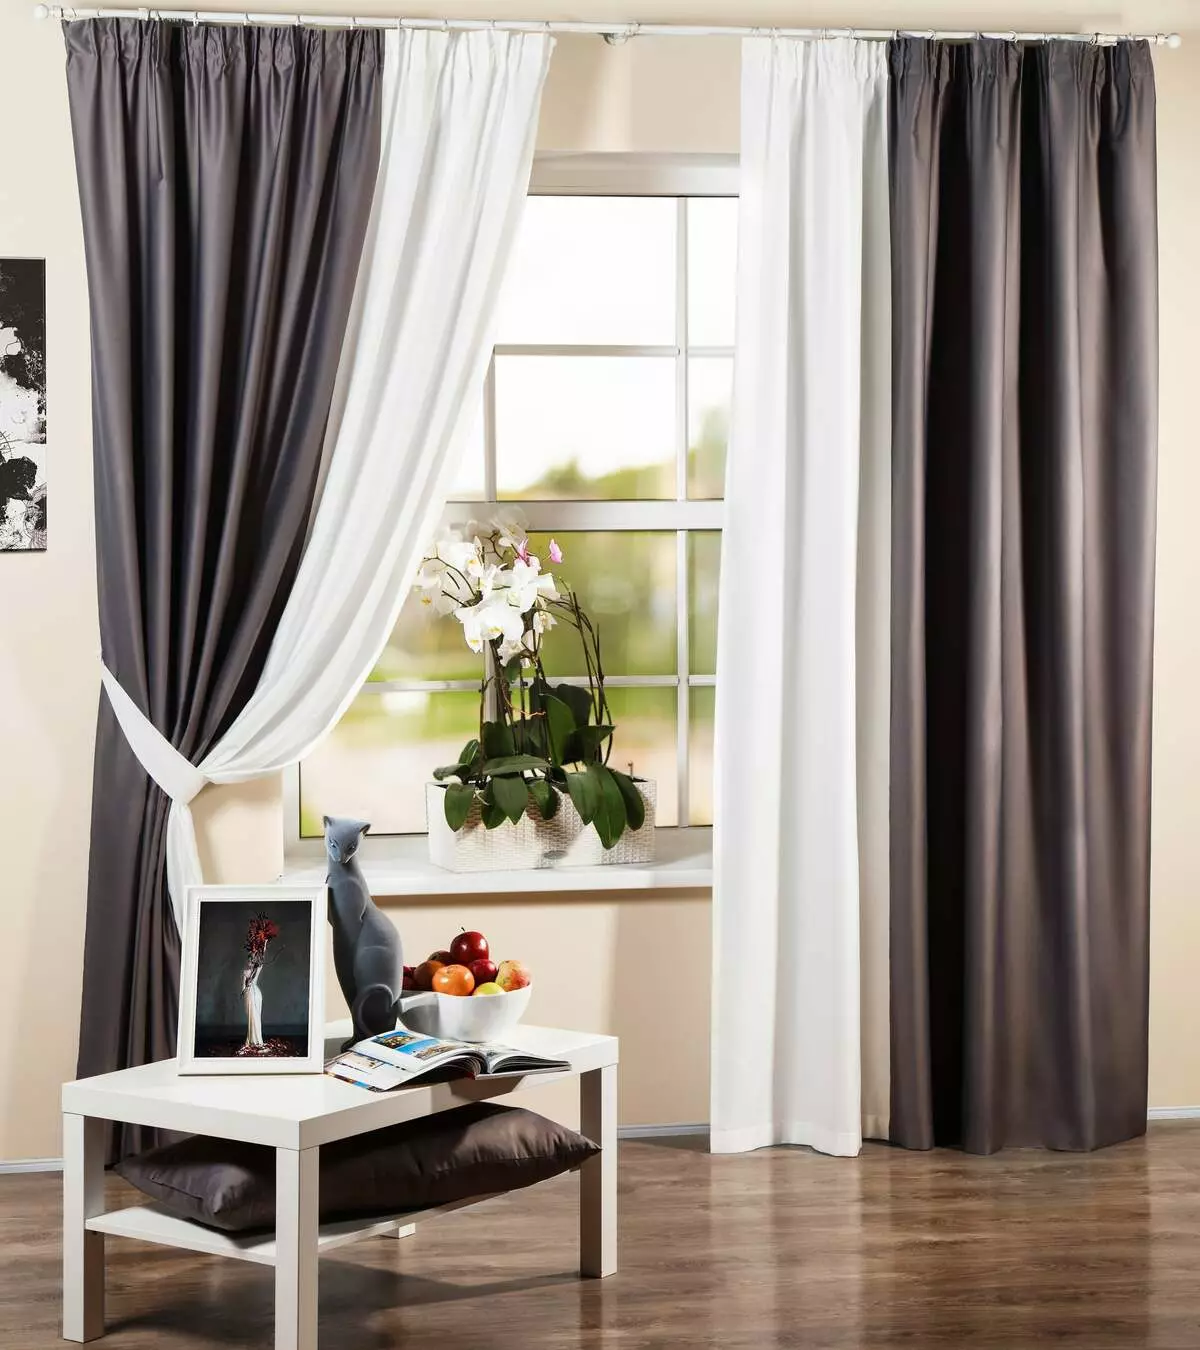 Cortinas dobles en la sala de estar (42 fotos): Nuevas cortinas de diseño en el pasillo. Café moderno y otras cortinas dobles. 9777_28